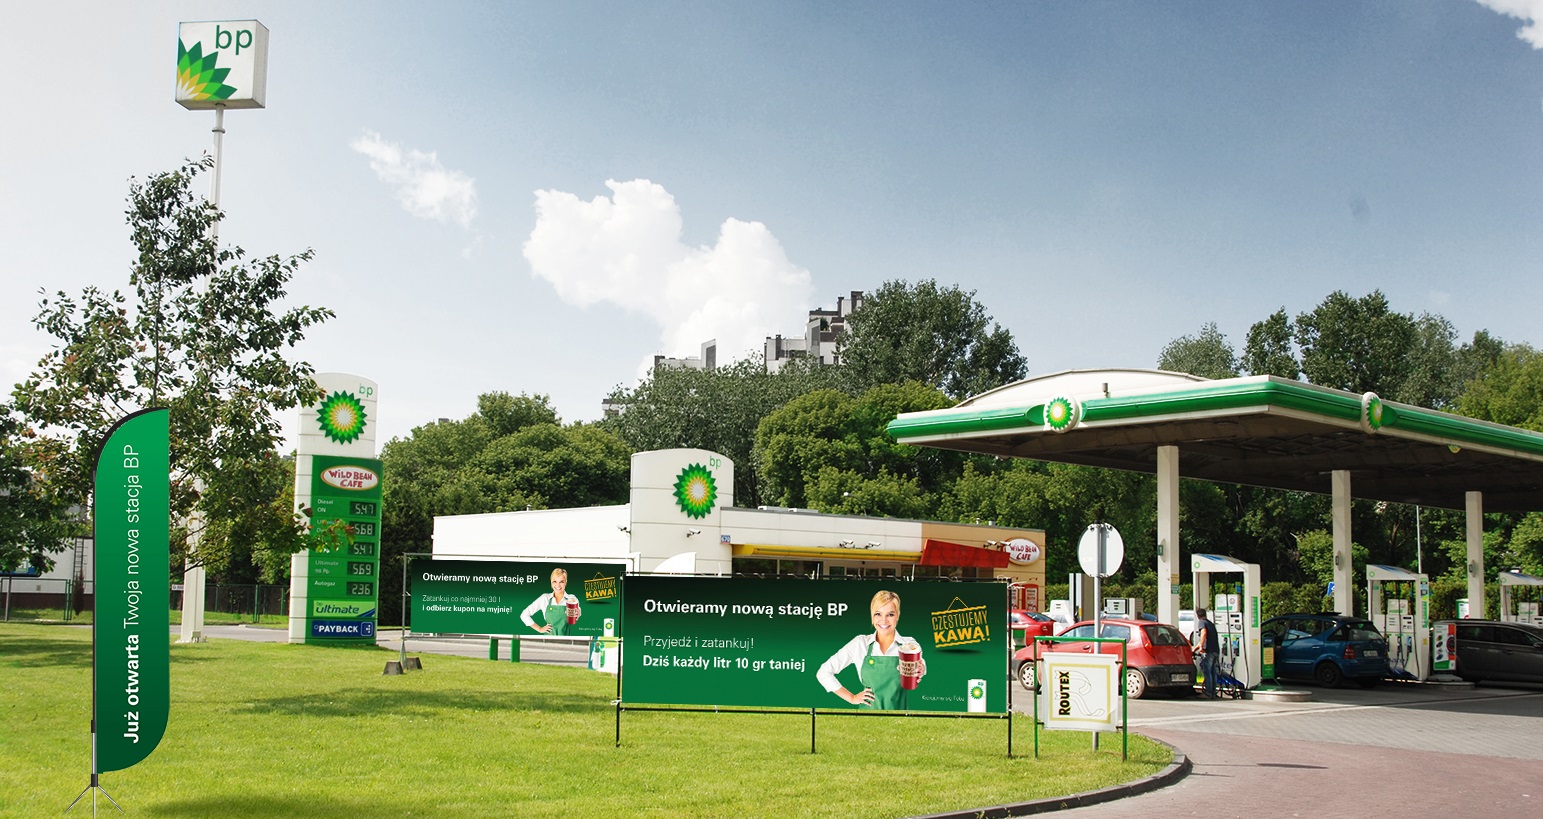 BP stawia na ofertę usług cyfrowych oraz ładowanie aut elektrycznych